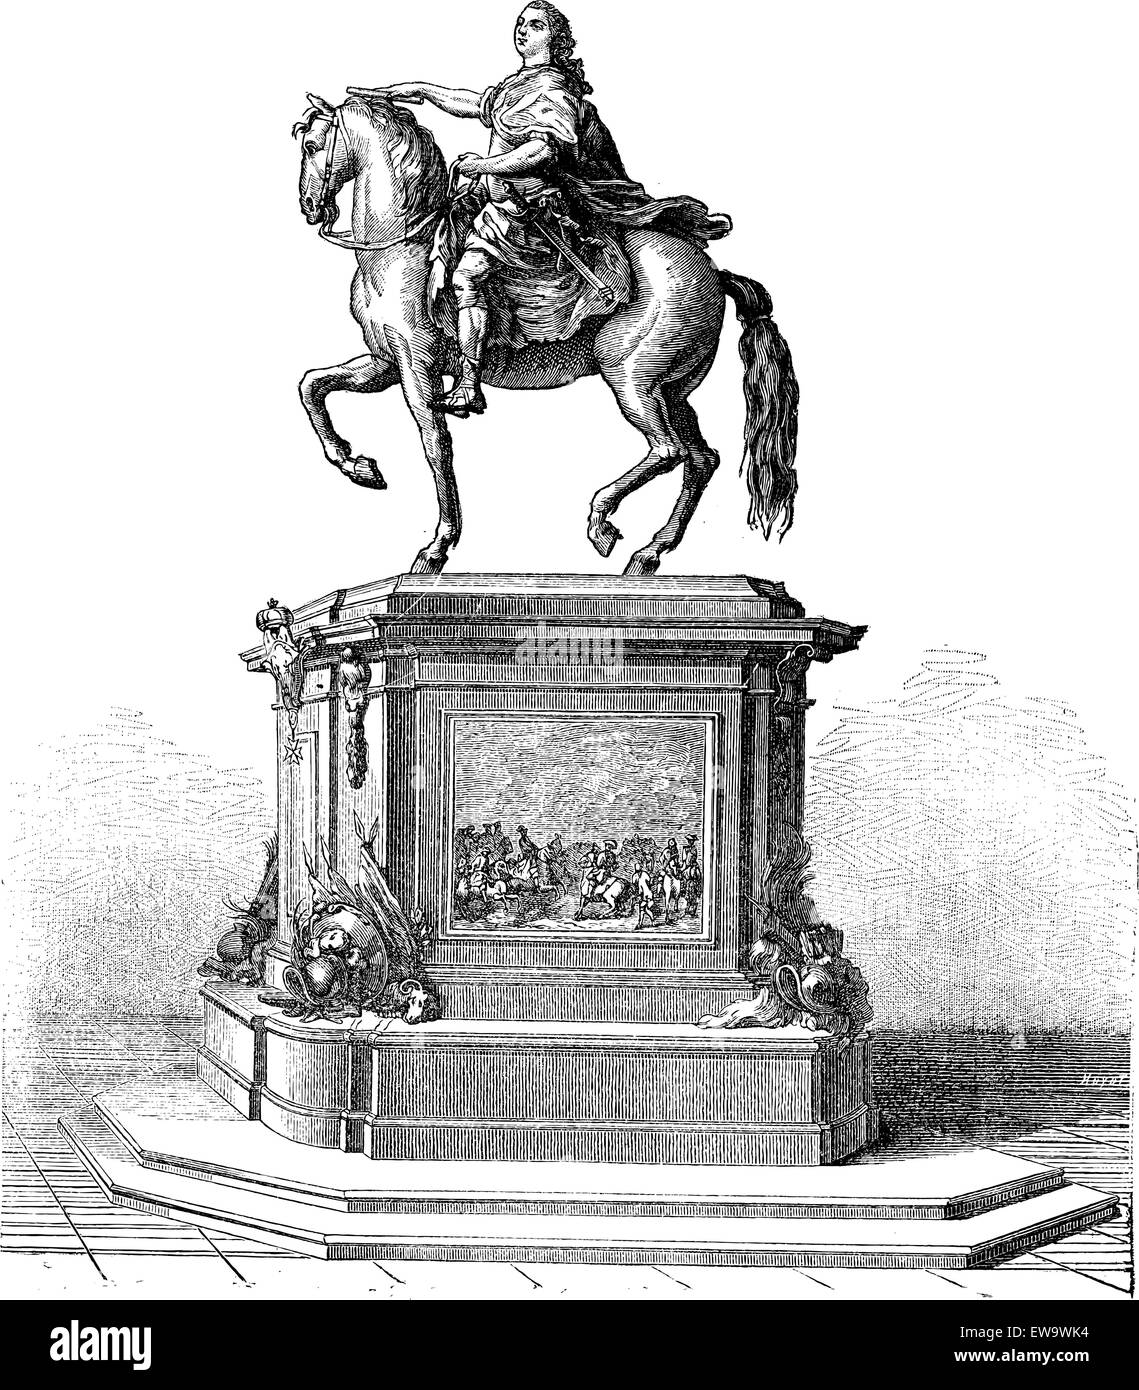 Statua di bronzo di Re Luigi XV di Francia montato su un cavallo, vintage illustrazioni incise. Enciclopedia industriale - E.O. Lami Illustrazione Vettoriale